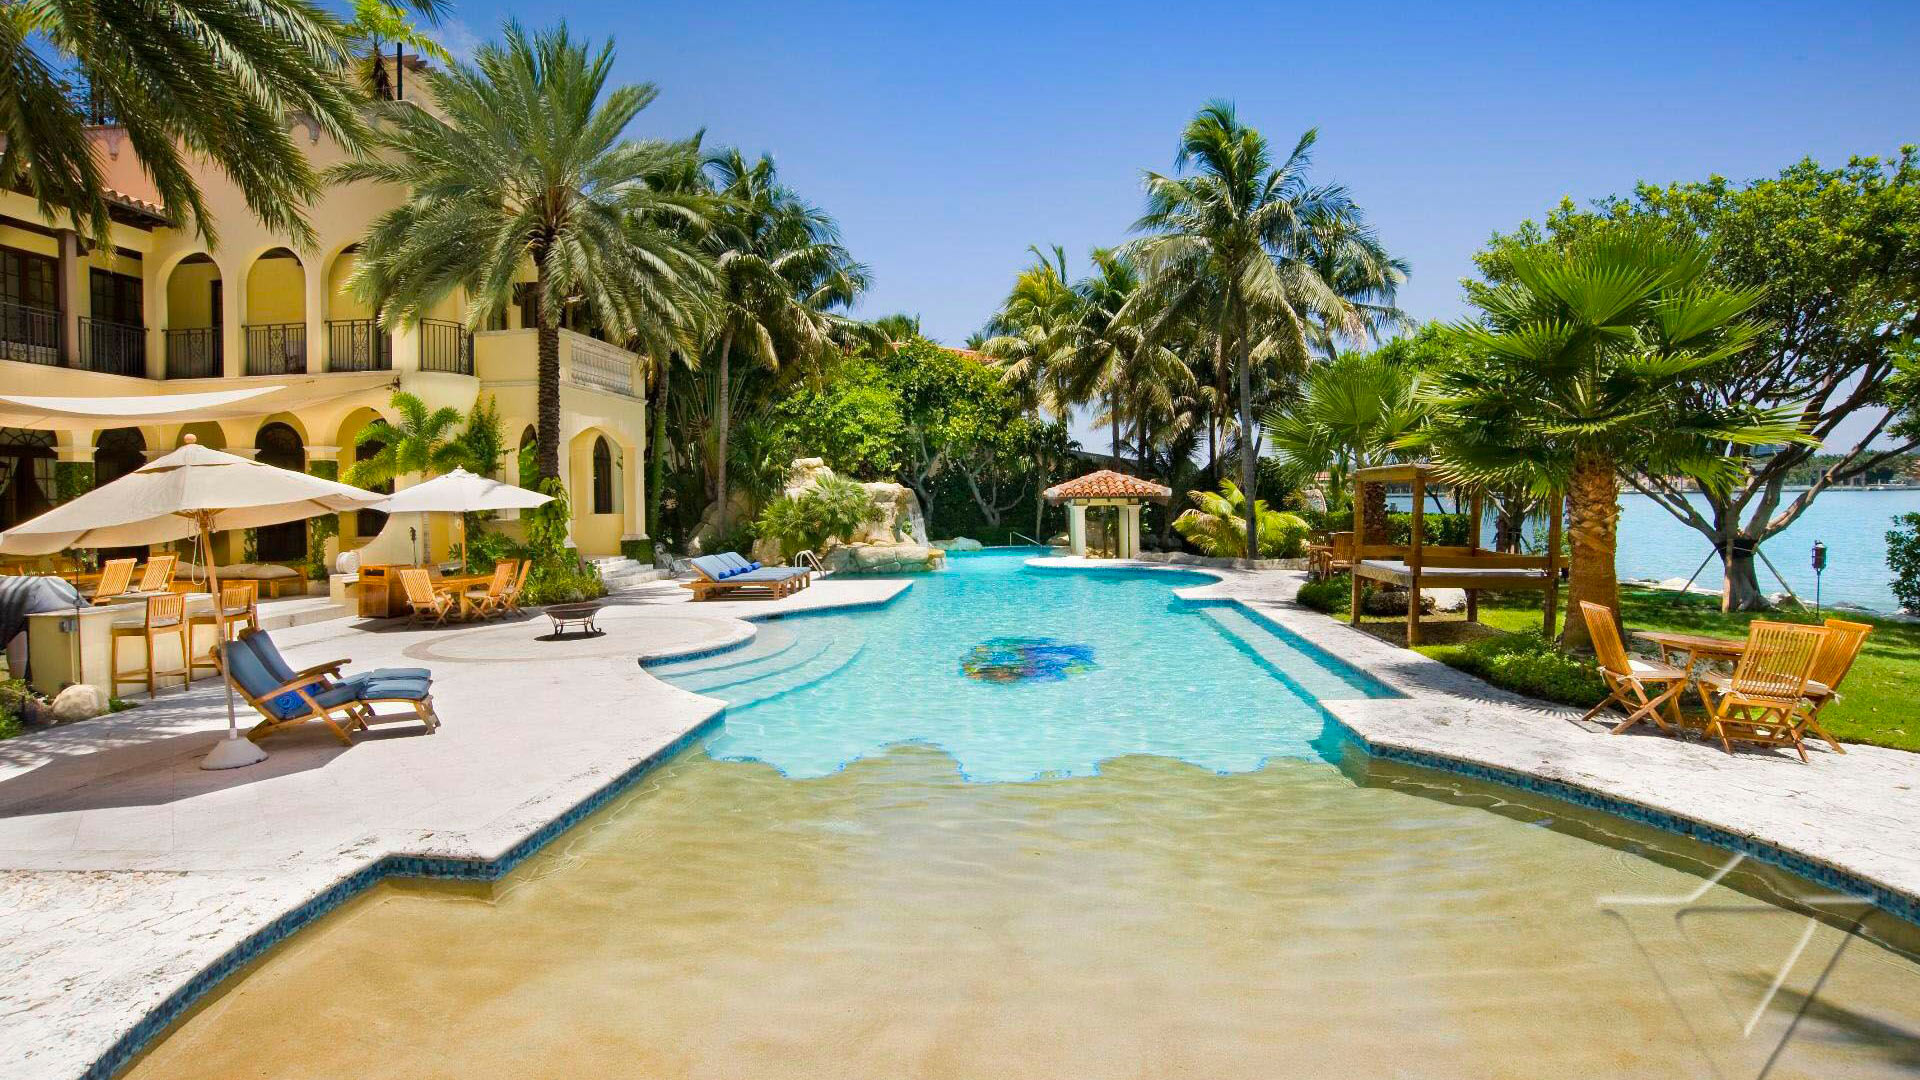 Villa Villa Contenta, Rental in Florida